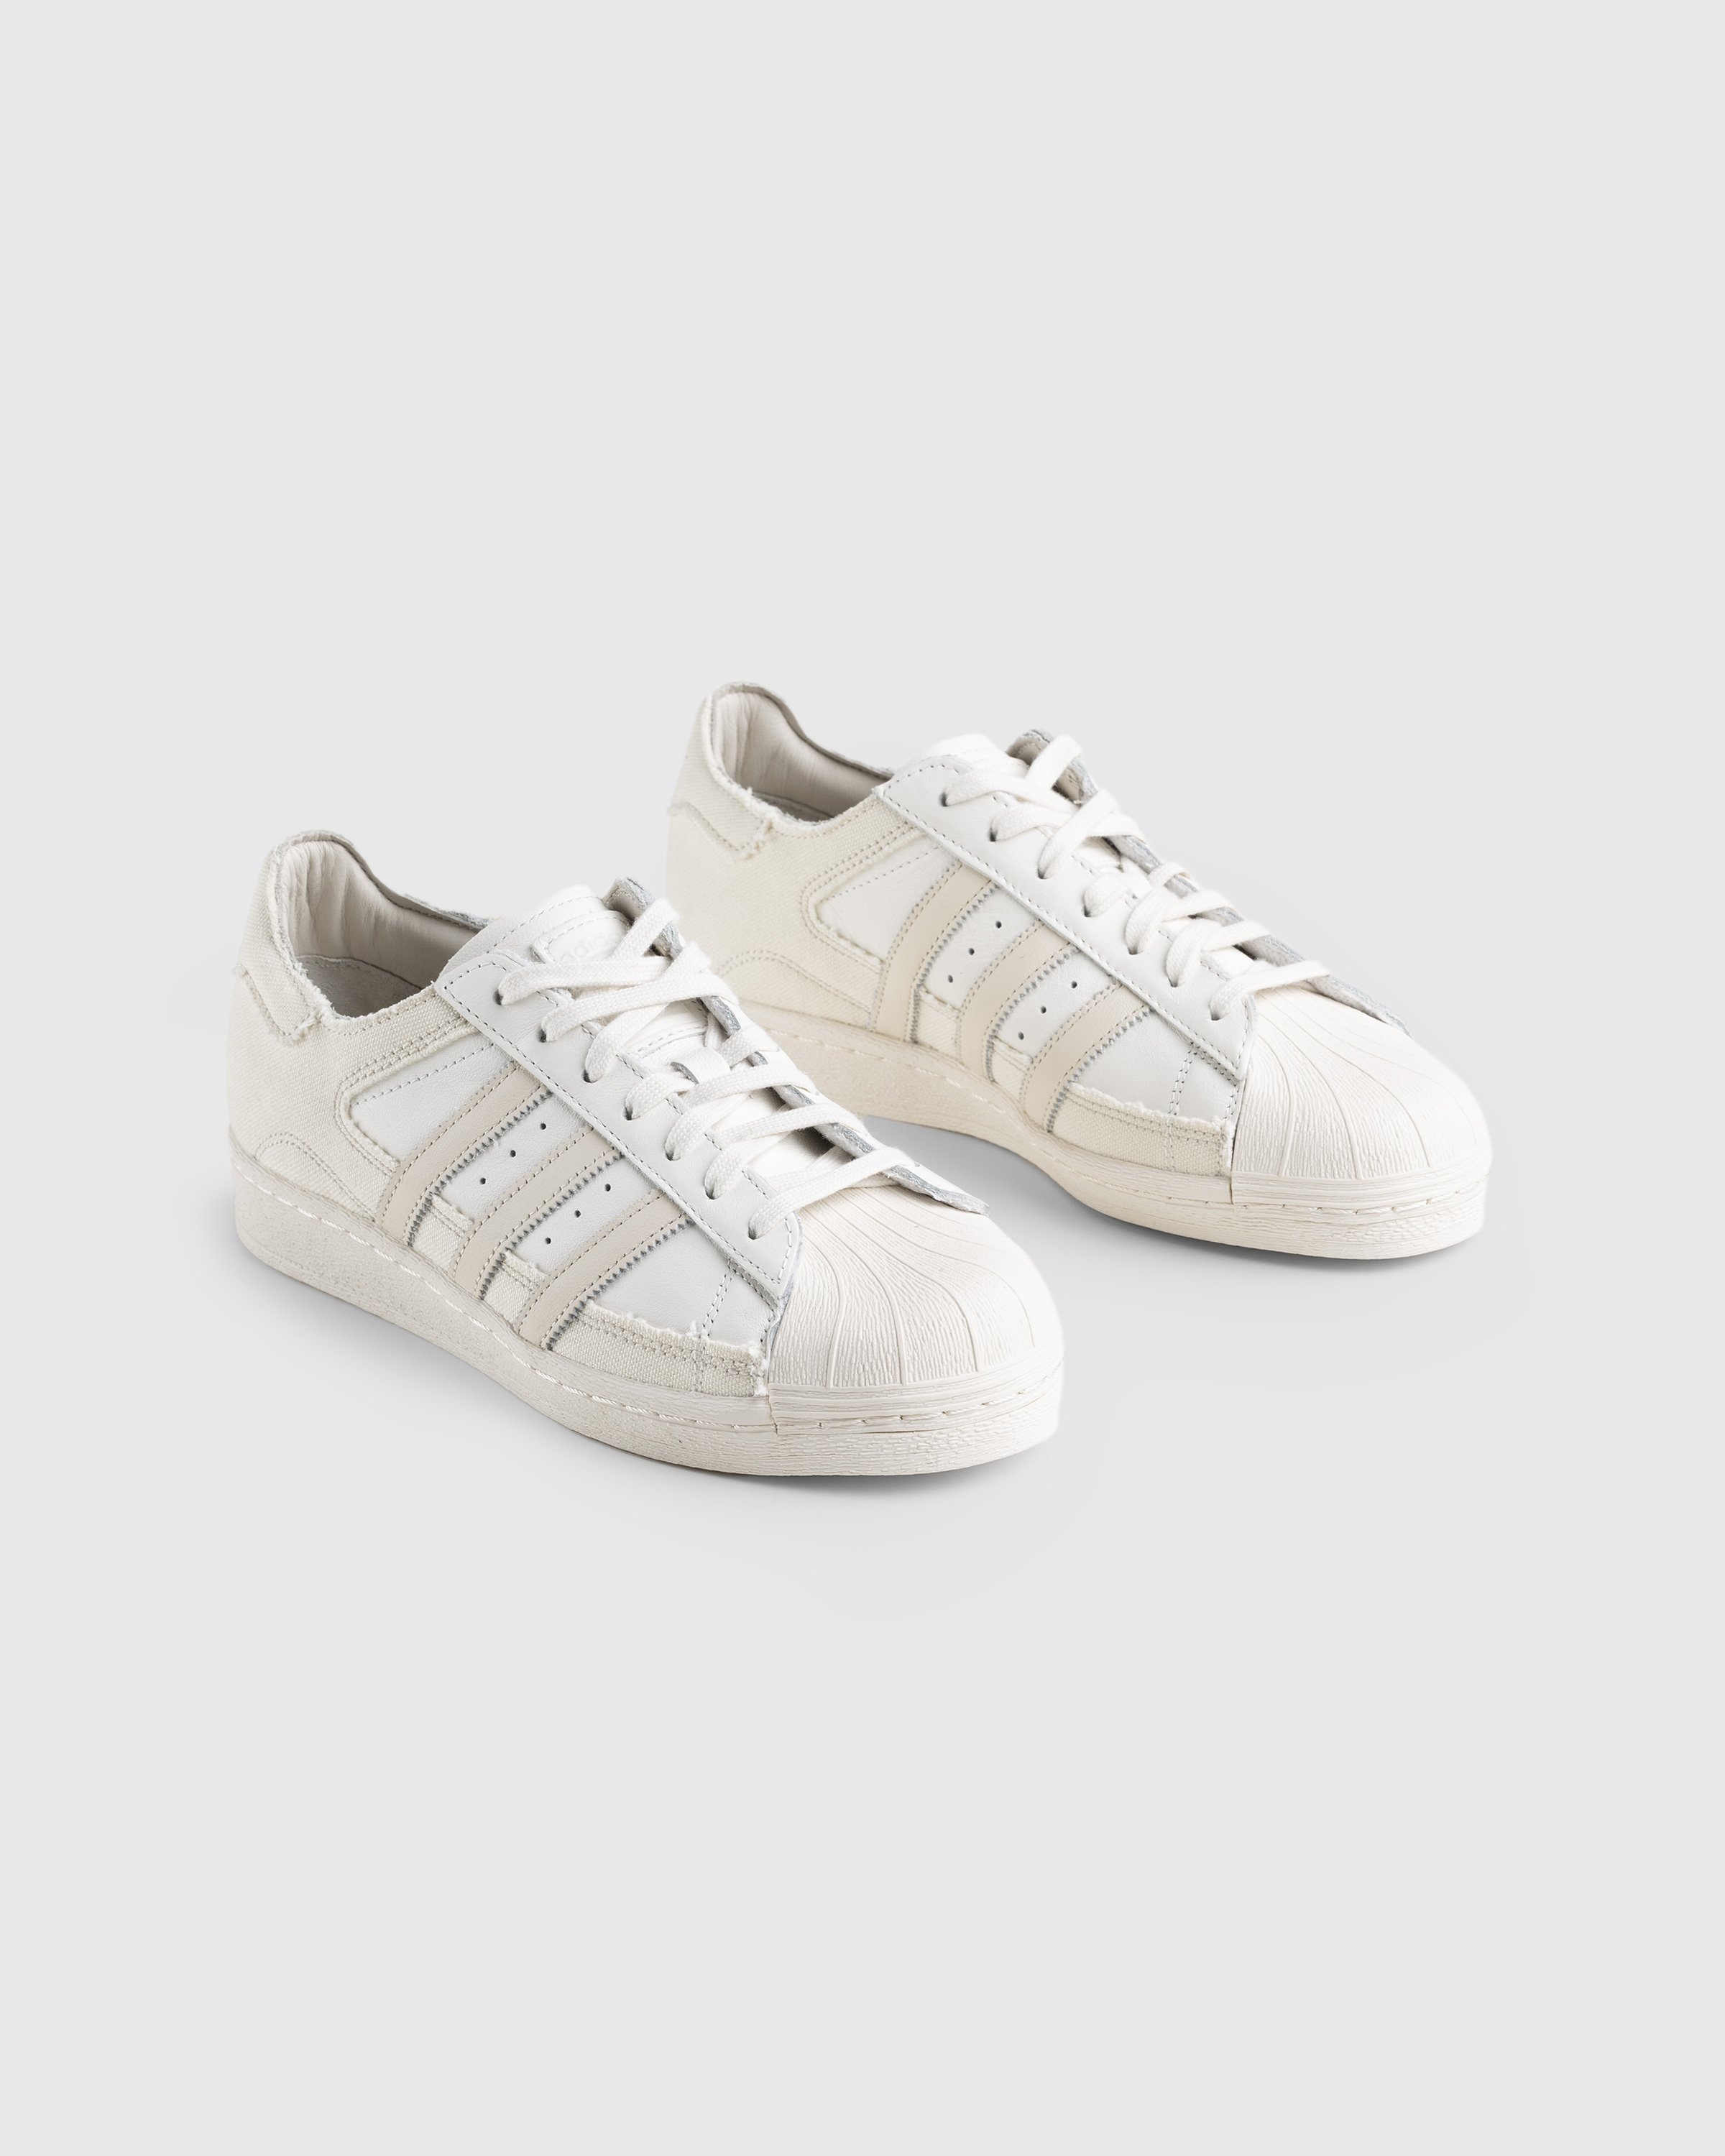 Adidas - Superstar 82 White/Beige - Footwear - Beige - Image 3